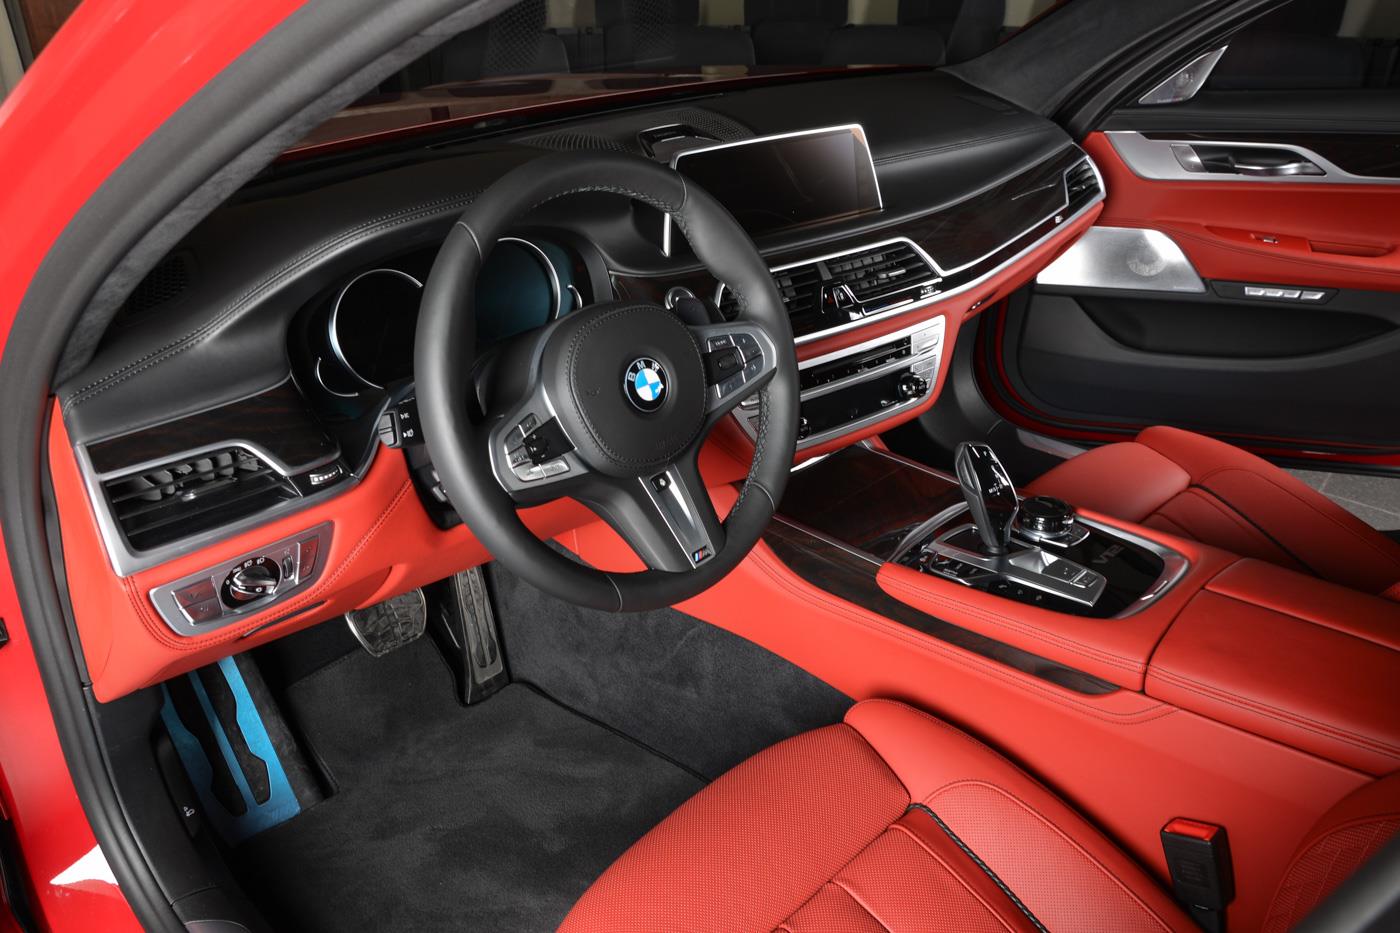 BMW M760Li xDrive by 3D Design